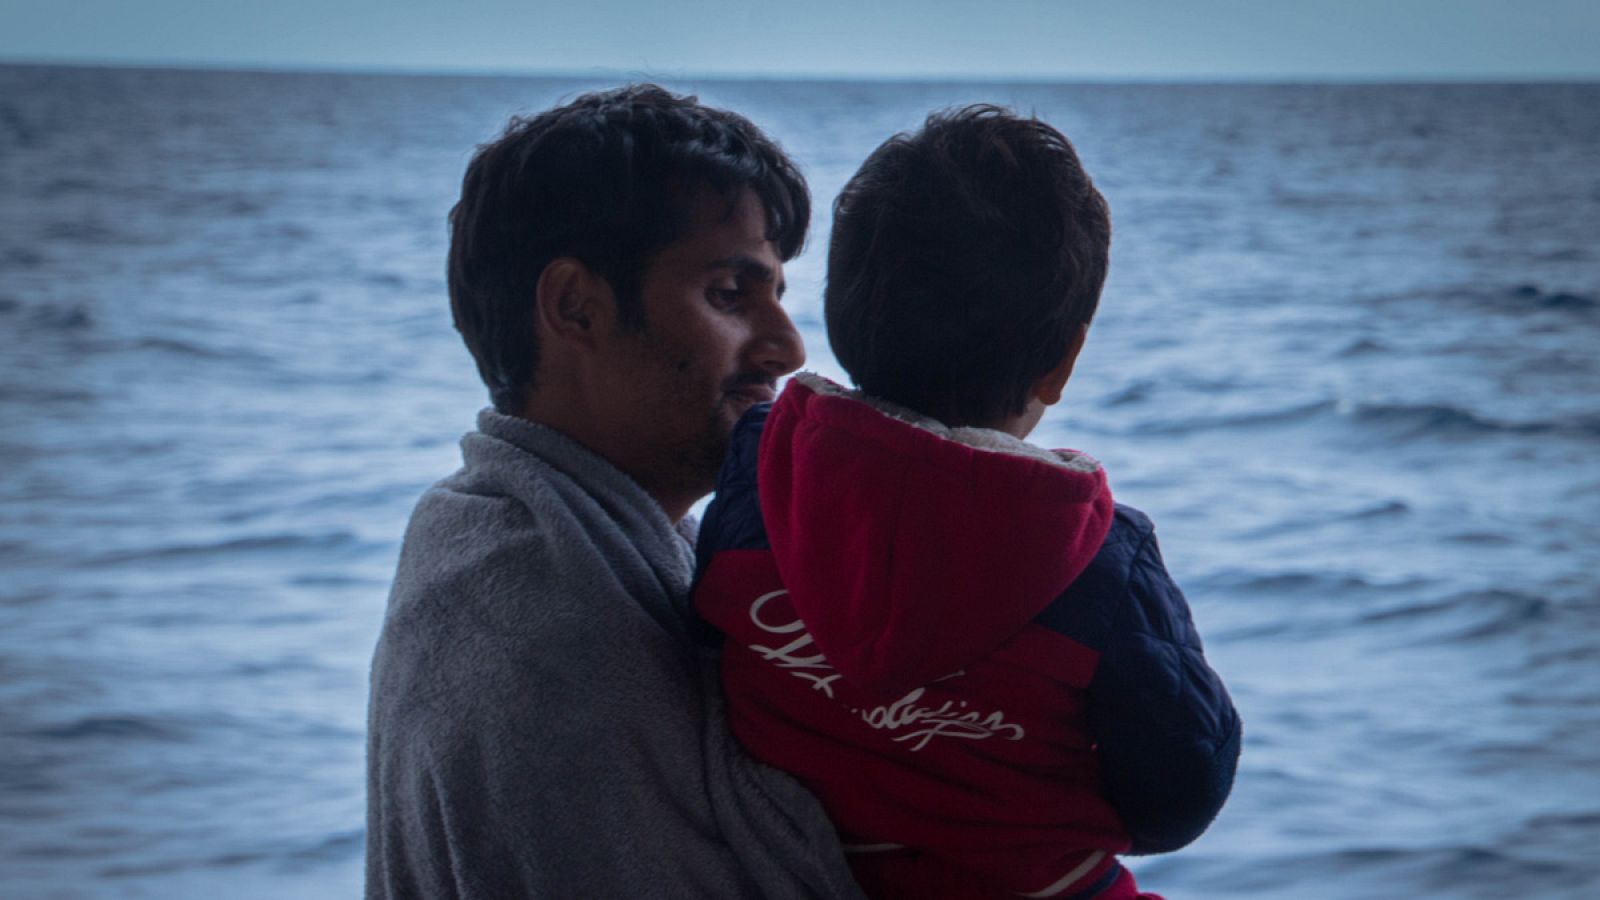 15.000 menores no acompañados llegaron a Italia procedentes de Libia en 2017